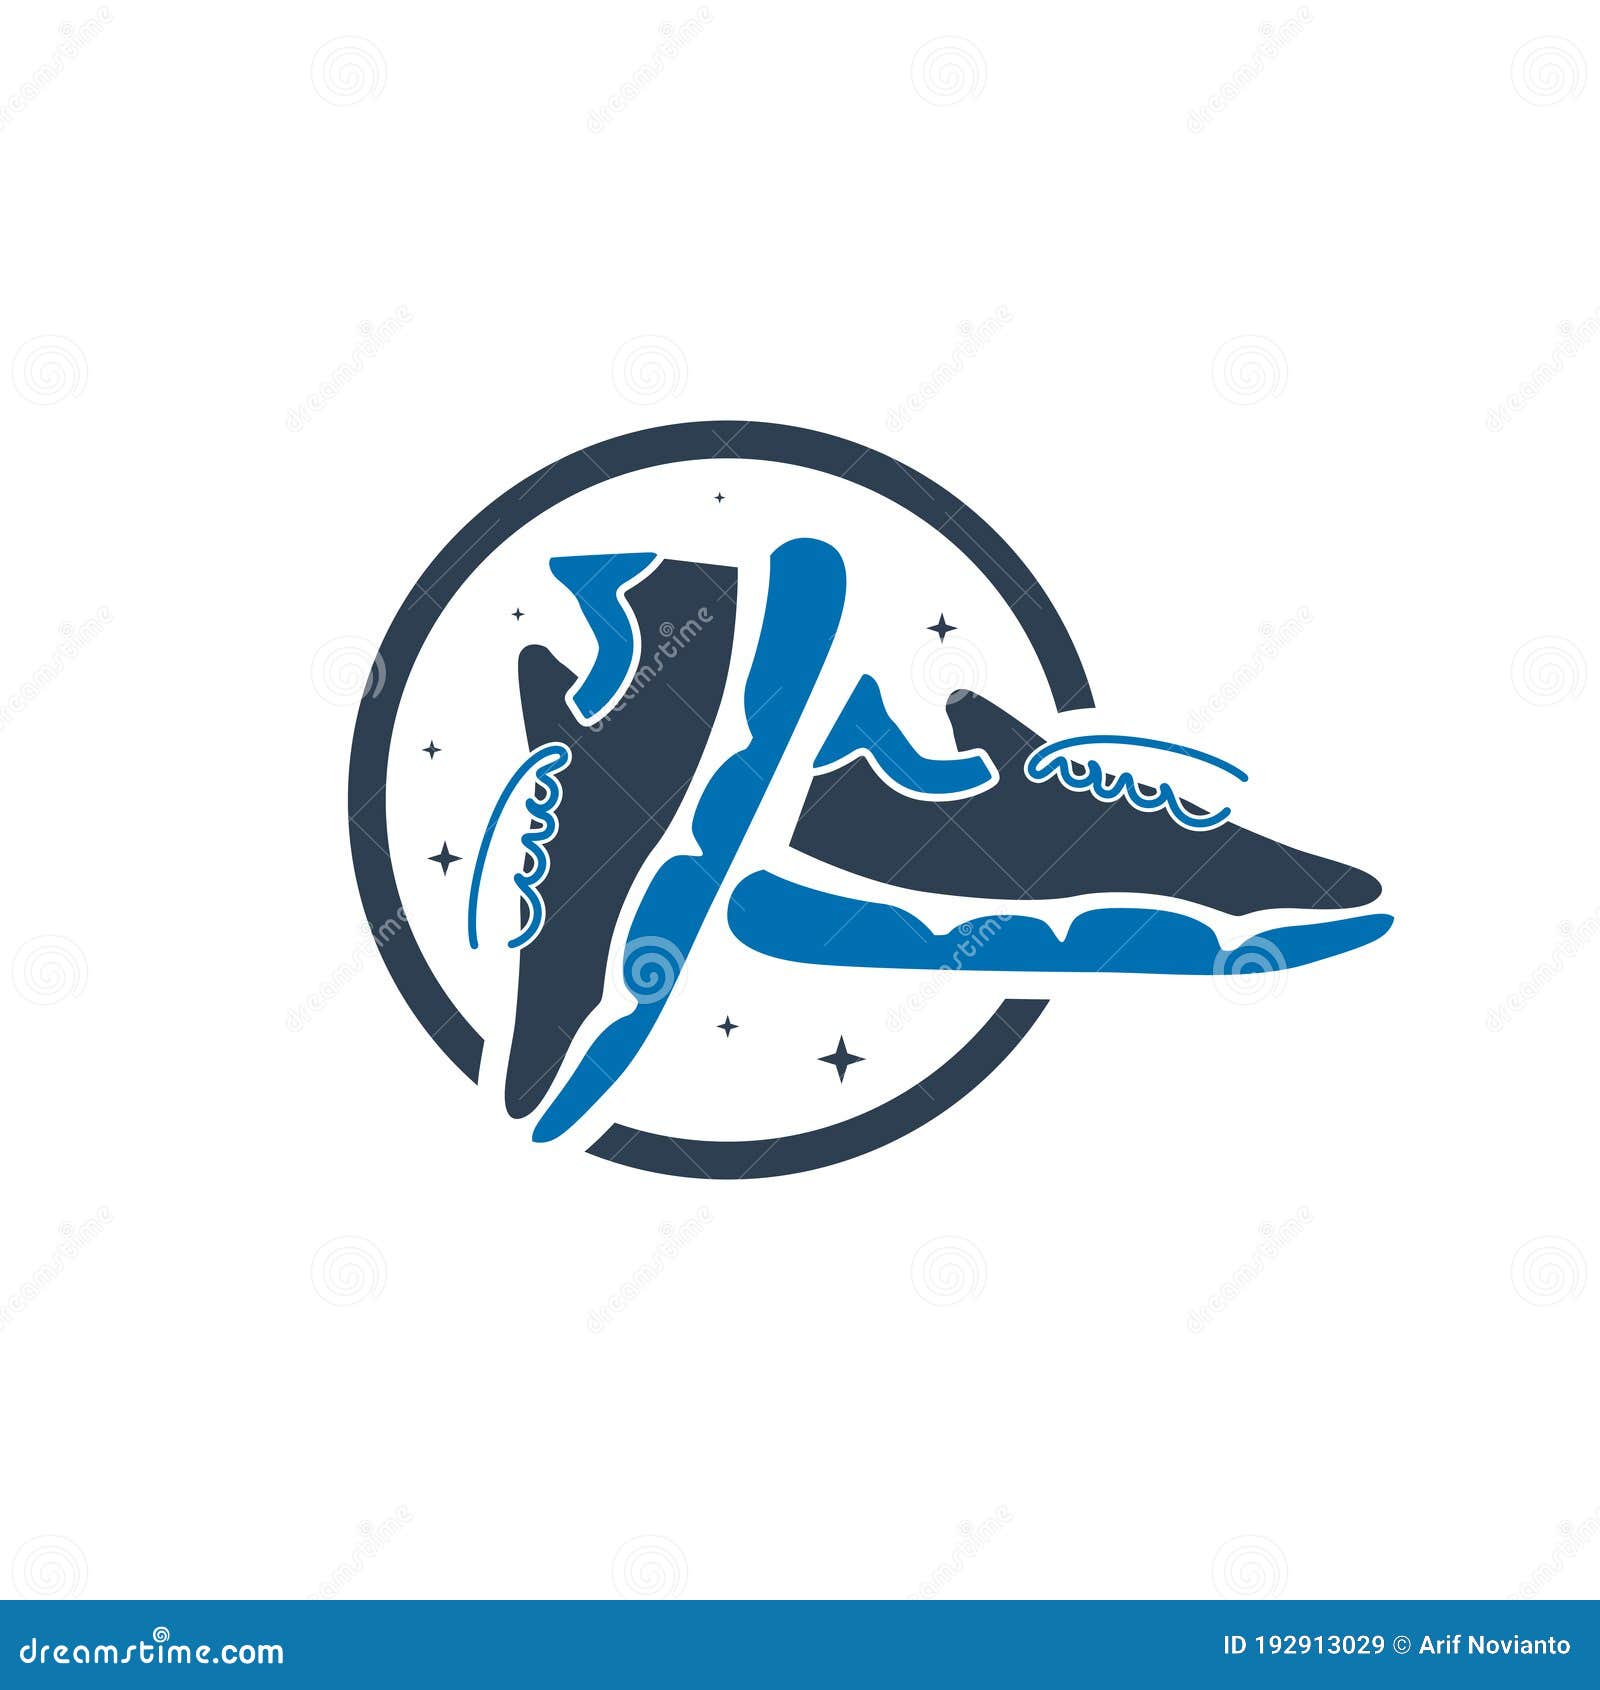 Modern sneaker shoe logo stock vector. Illustration of athletic ...